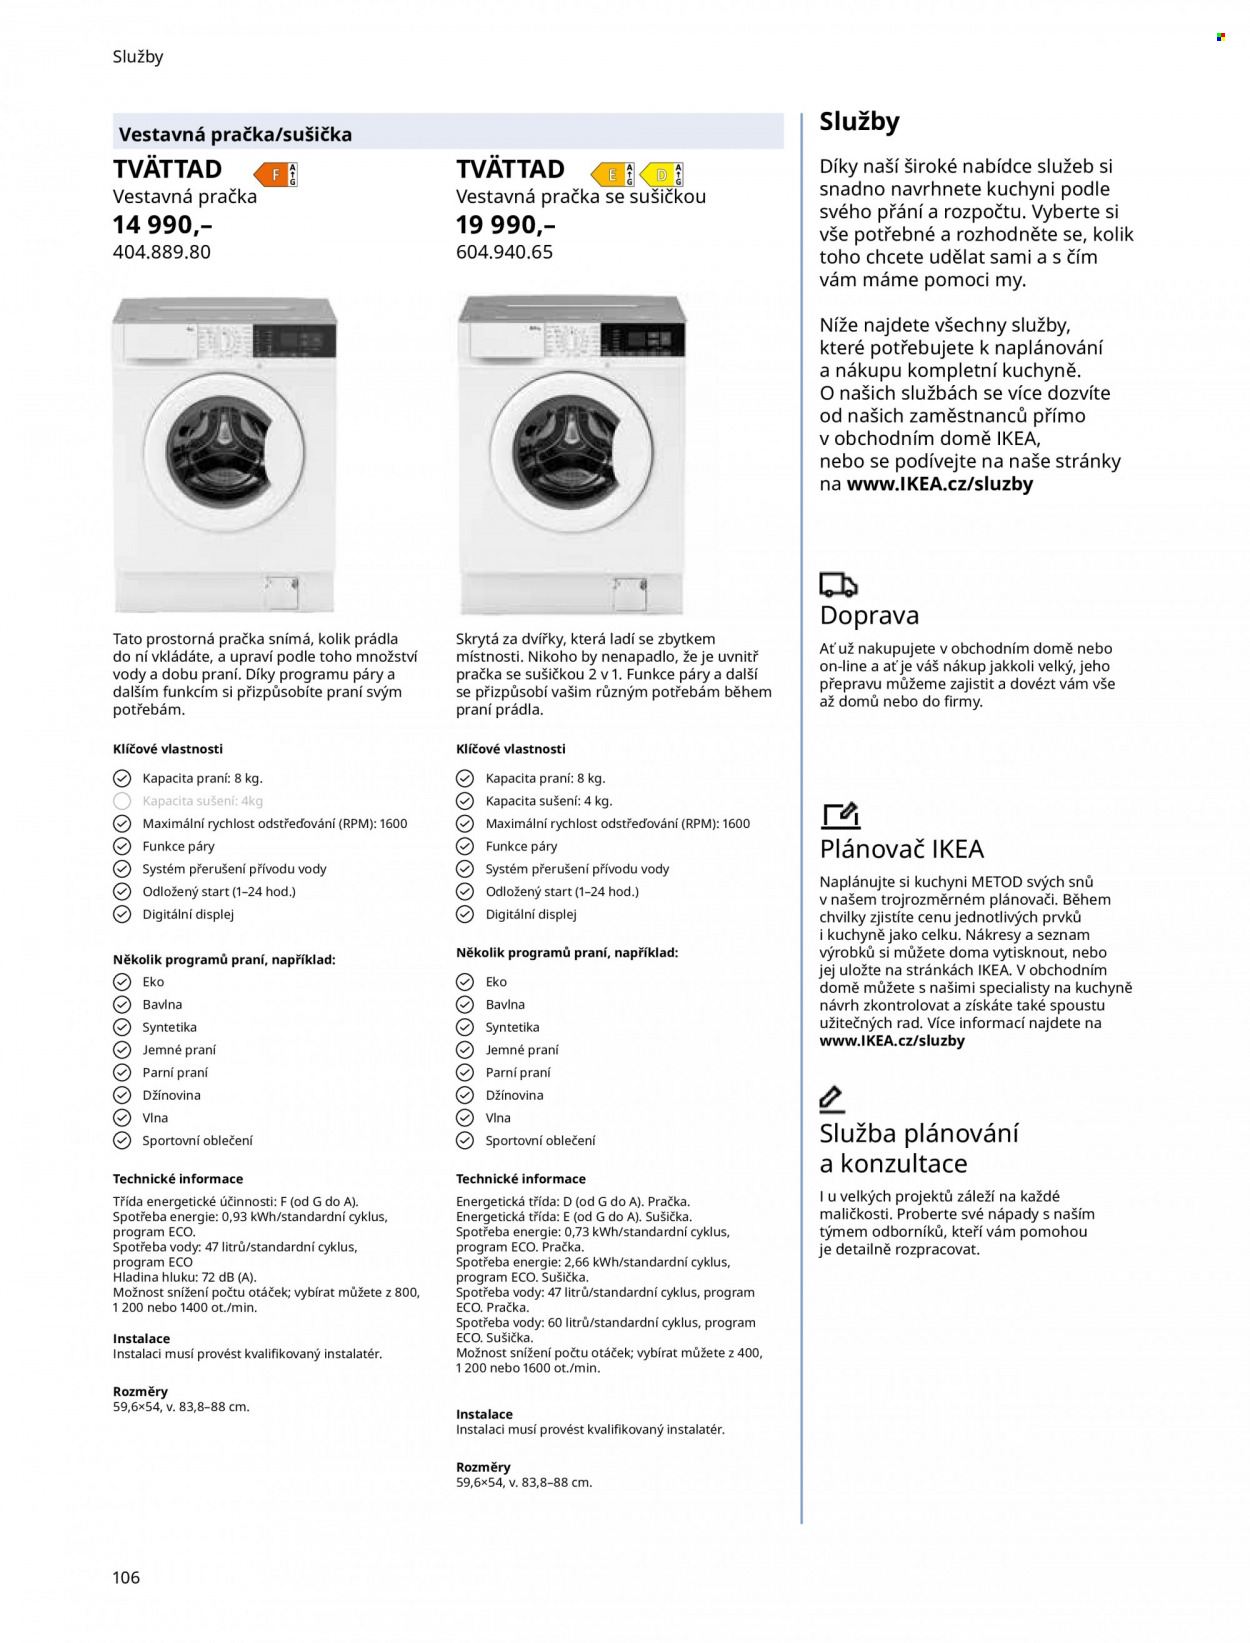 Leták IKEA - Produkty v akci - pračka, pračka se sušičkou, sušička, Metod. Strana 106.